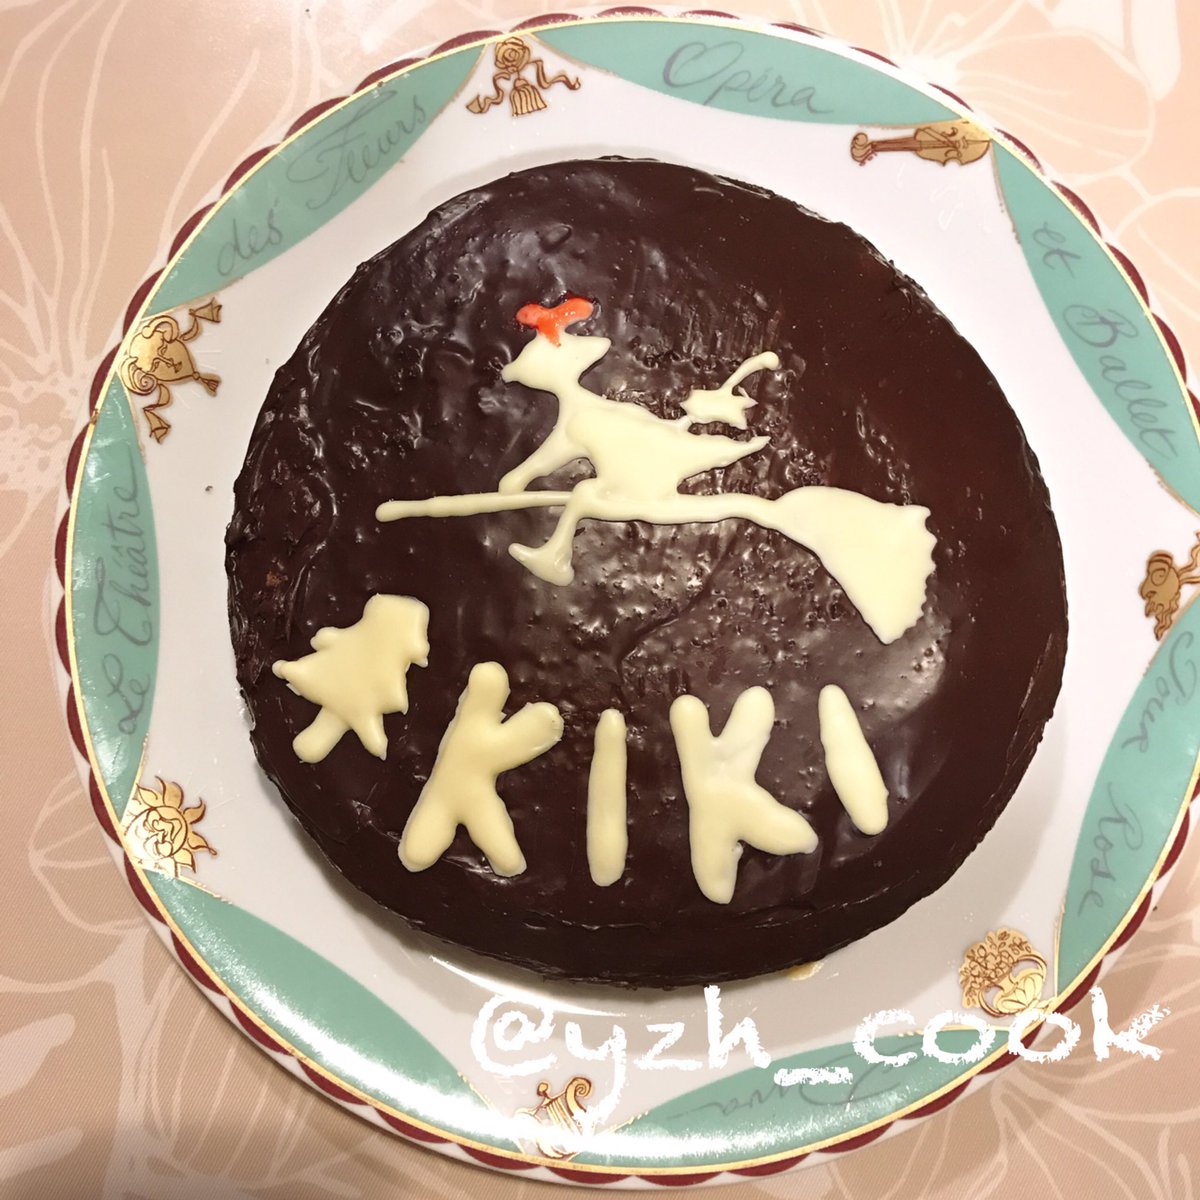 Yuzu على تويتر 魔女の宅急便の Kikiケーキ ヘラなくてスプーンで塗りました ケーキの中はガナッシュと ベリーの層にしました お菓子作り ケーキ チョコレートケーキ ジブリ飯 魔女の宅急便 お菓子作り好きな人と繋がりたい 手作り ケーキ